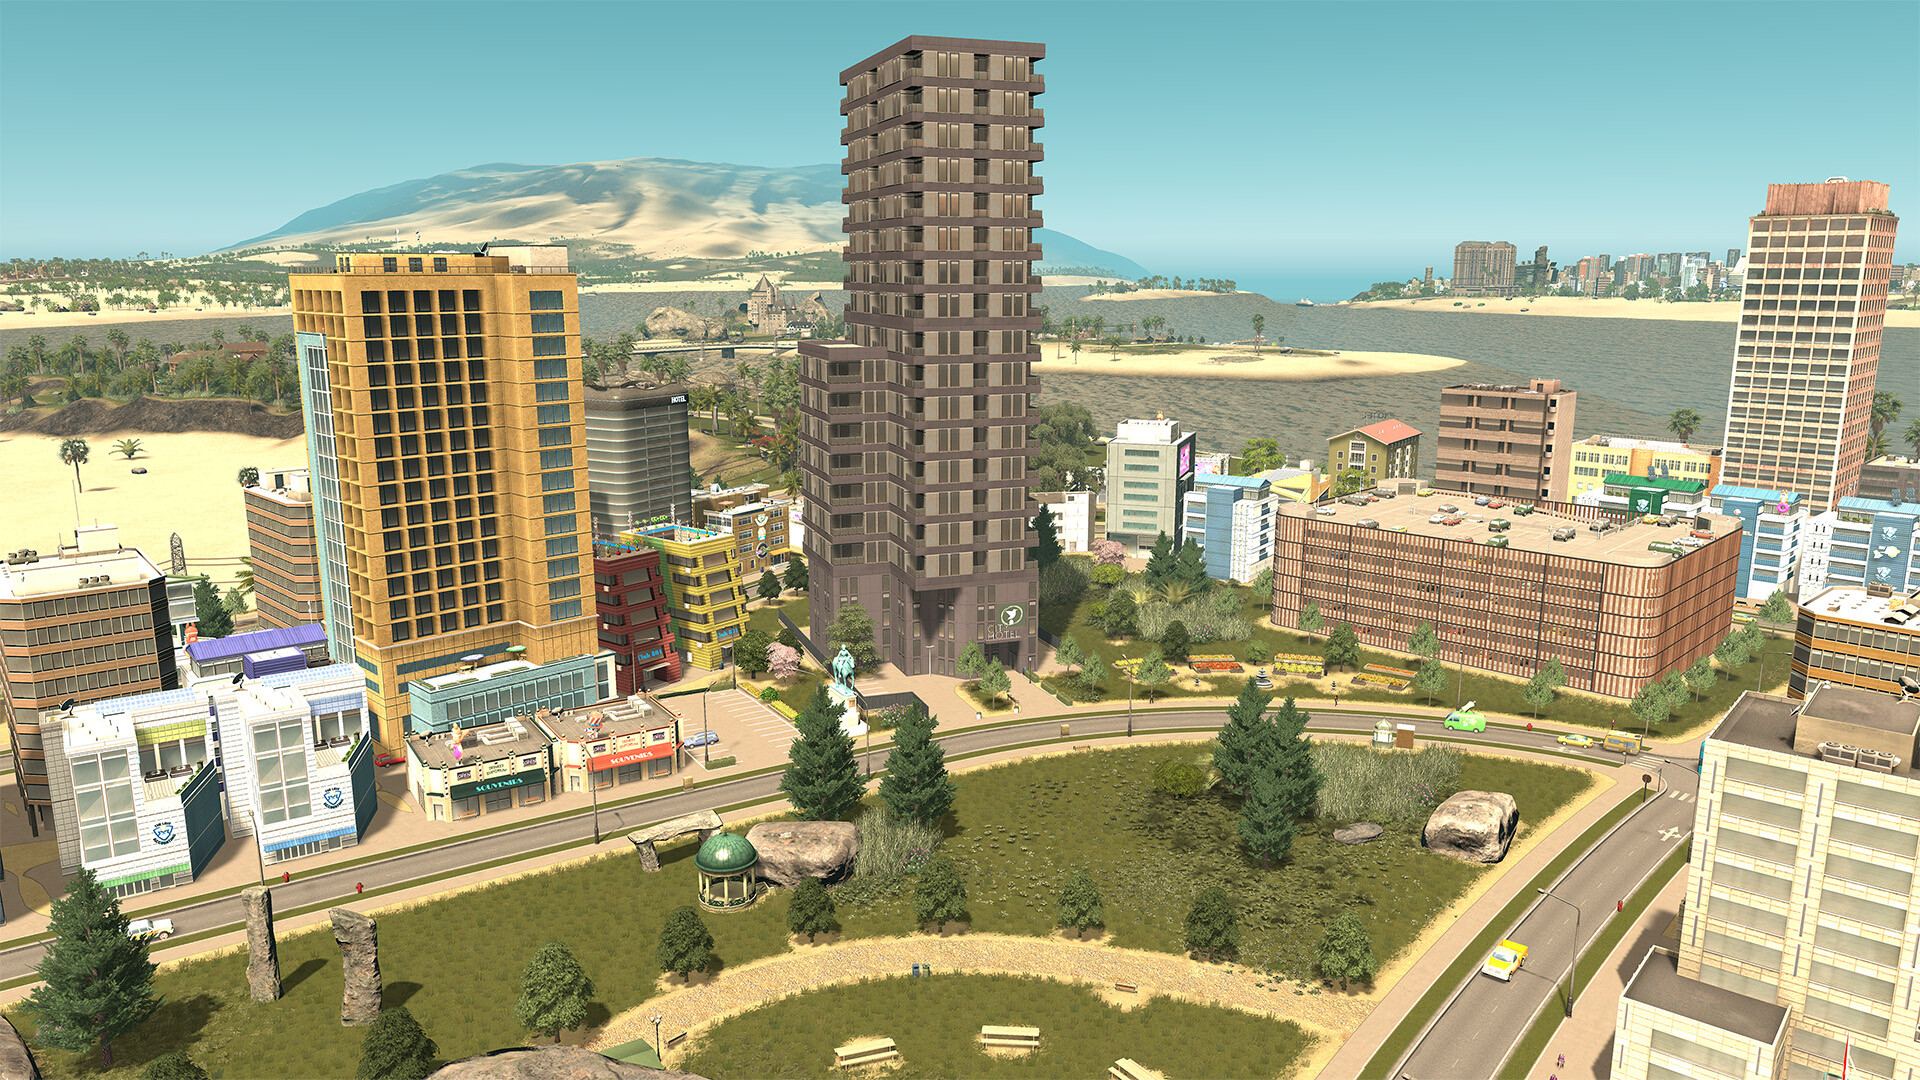 Cities: Skylines - Hotels & Retreats DLC EU Steam CD Key